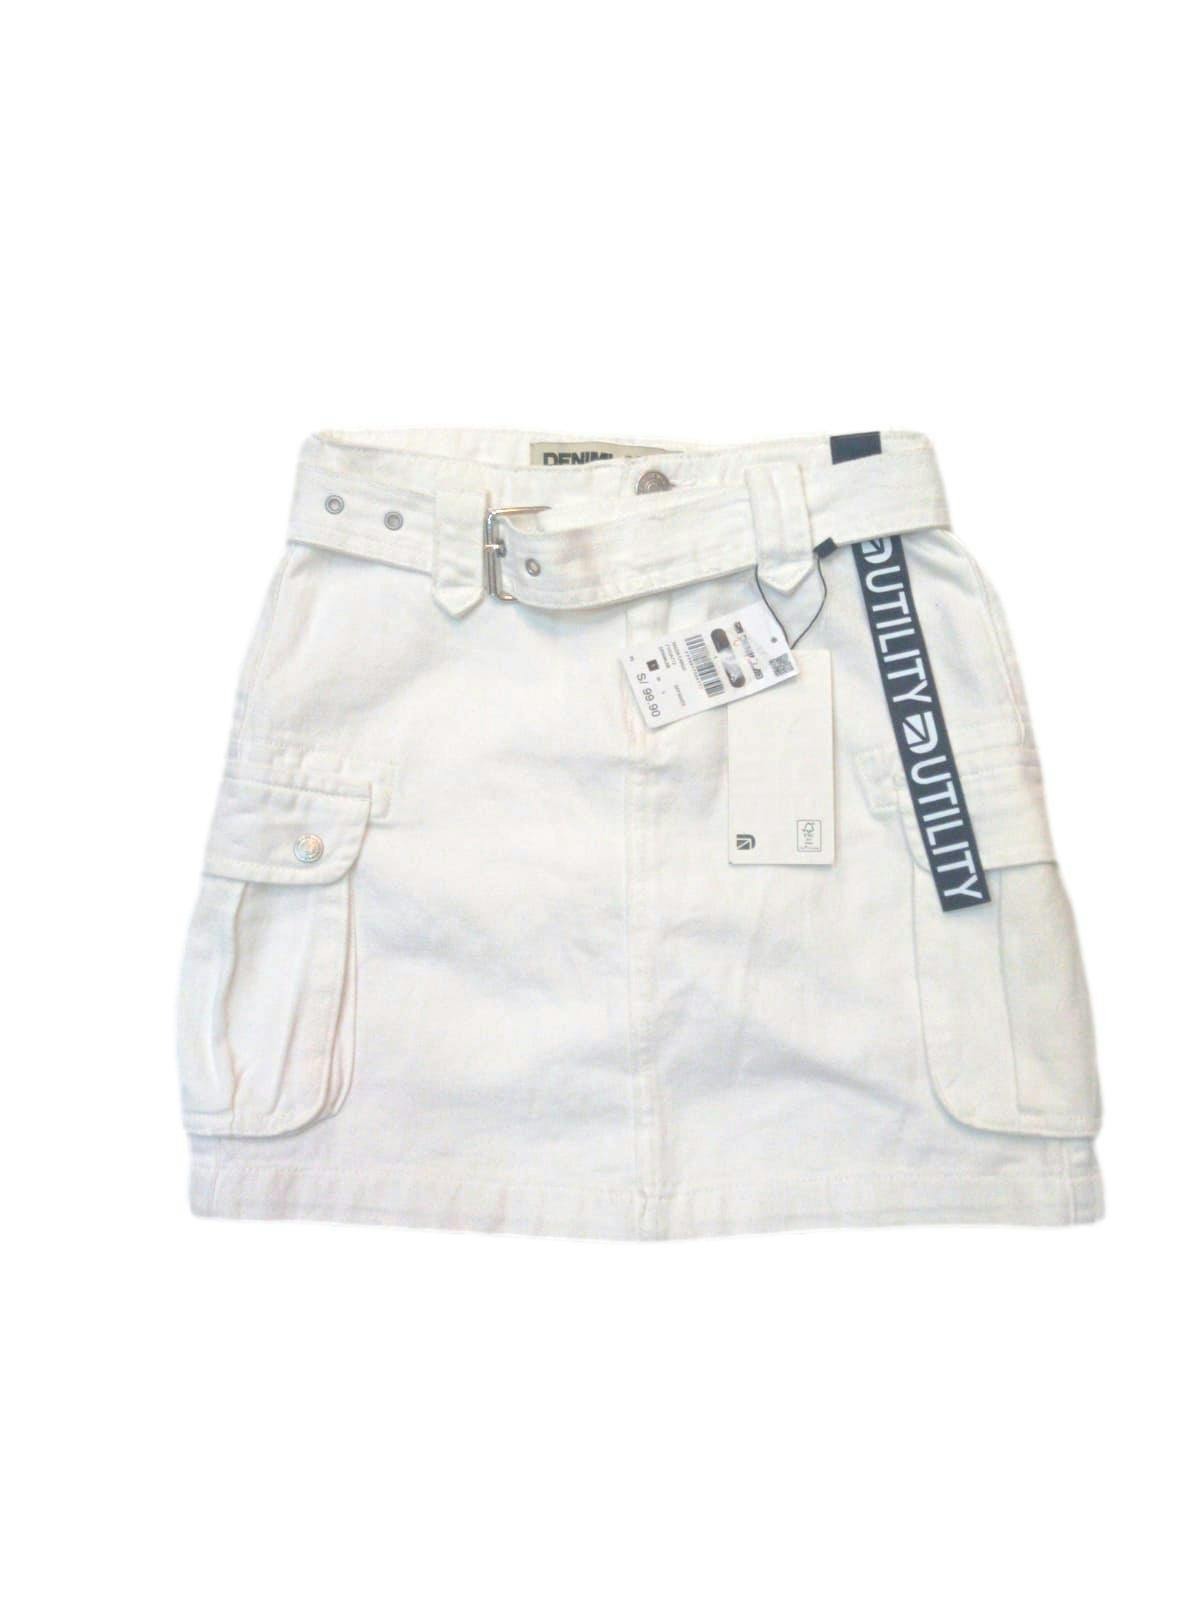 Falda cargo Denimlab blanca 80% algodón, con correa y bolsillos laterales con broches. Nuevo con etiqueta.Cintura 68cm, Largo 40cm.